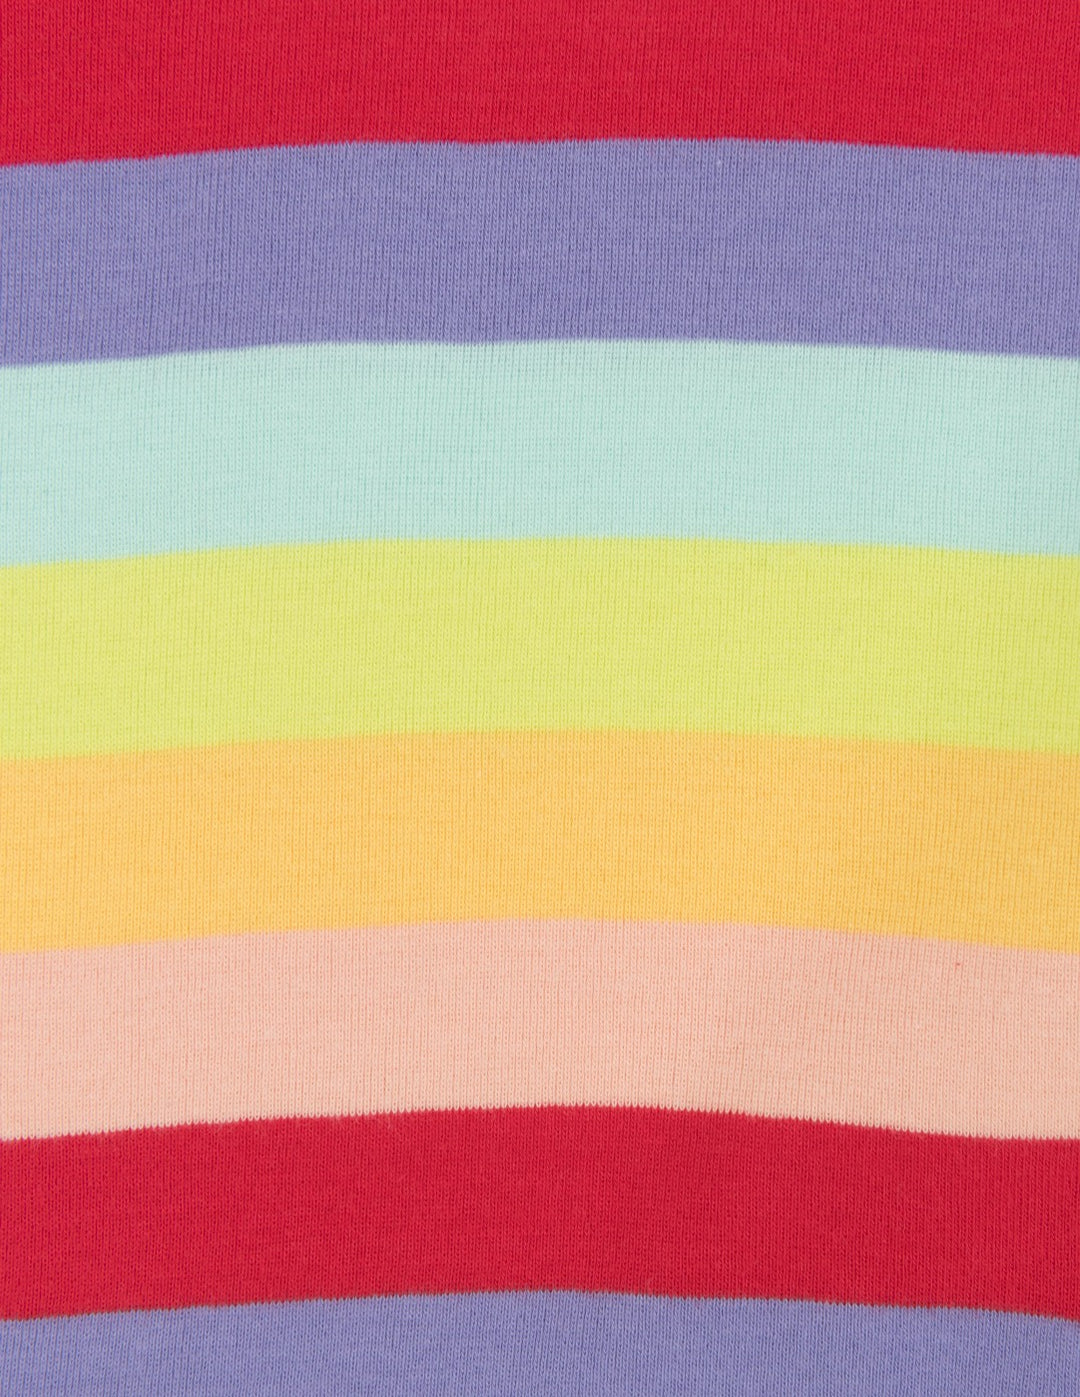 girls rainbow striped shorts cotton pajamas